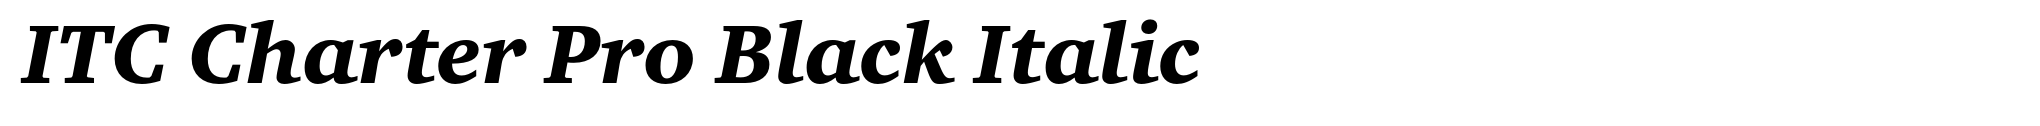 ITC Charter Pro Black Italic image